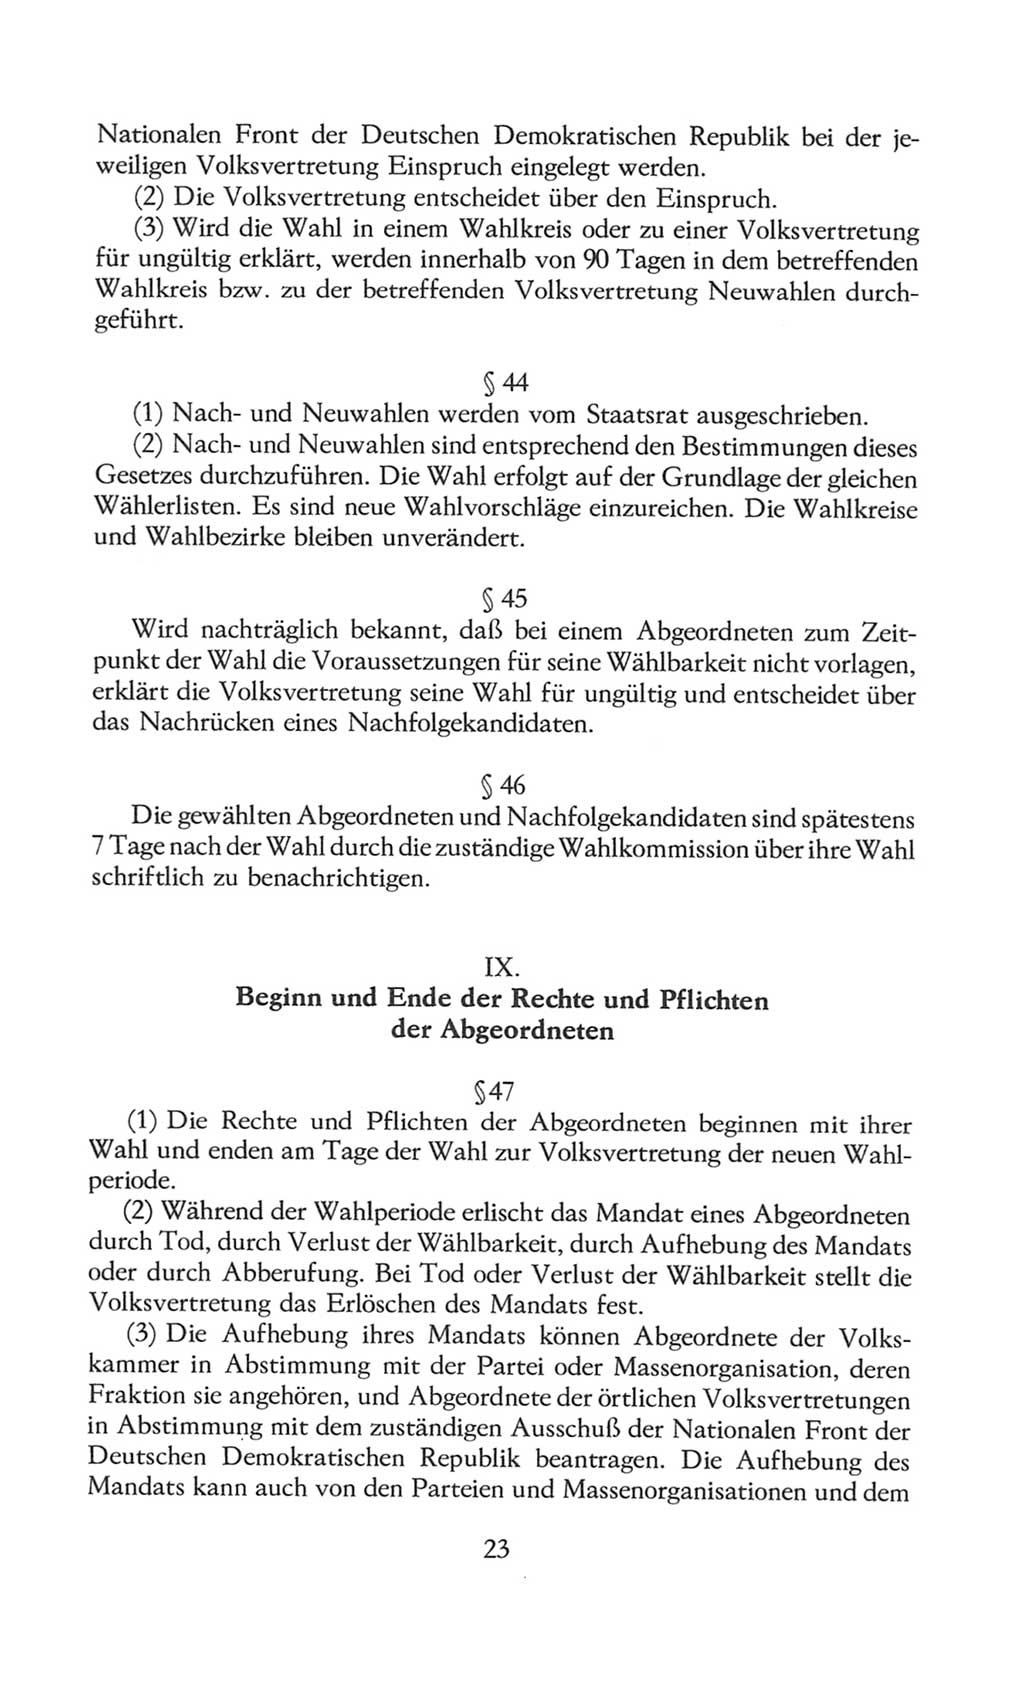 Volkskammer (VK) der Deutschen Demokratischen Republik (DDR), 8. Wahlperiode 1981-1986, Seite 23 (VK. DDR 8. WP. 1981-1986, S. 23)